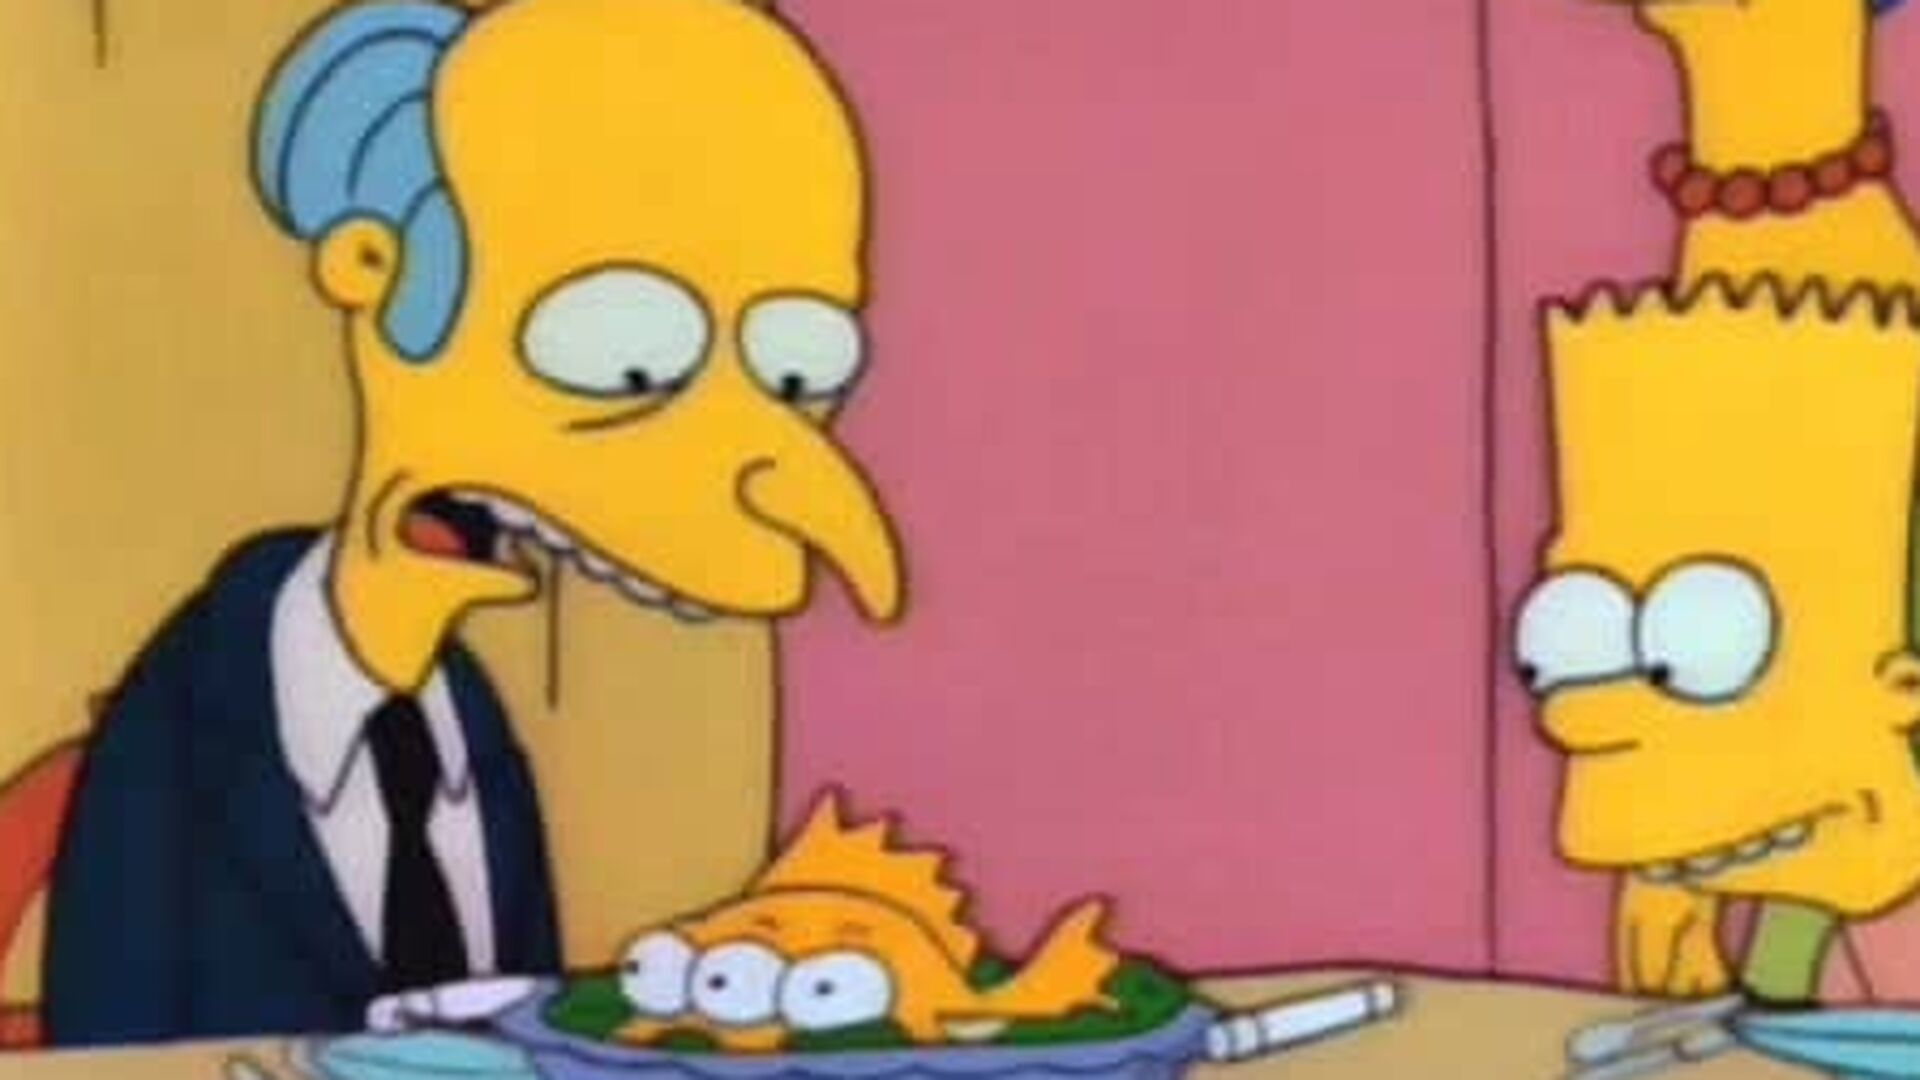 Dos autos... tres ojos... (T. 2-1990) El pez de Bart Simpson termina carg&aacute;ndose la carrera pol&iacute;tica de Burns. Una s&aacute;tira sobre la demoscopia y de paso del&nbsp; peloteo al jefe. "Burt".